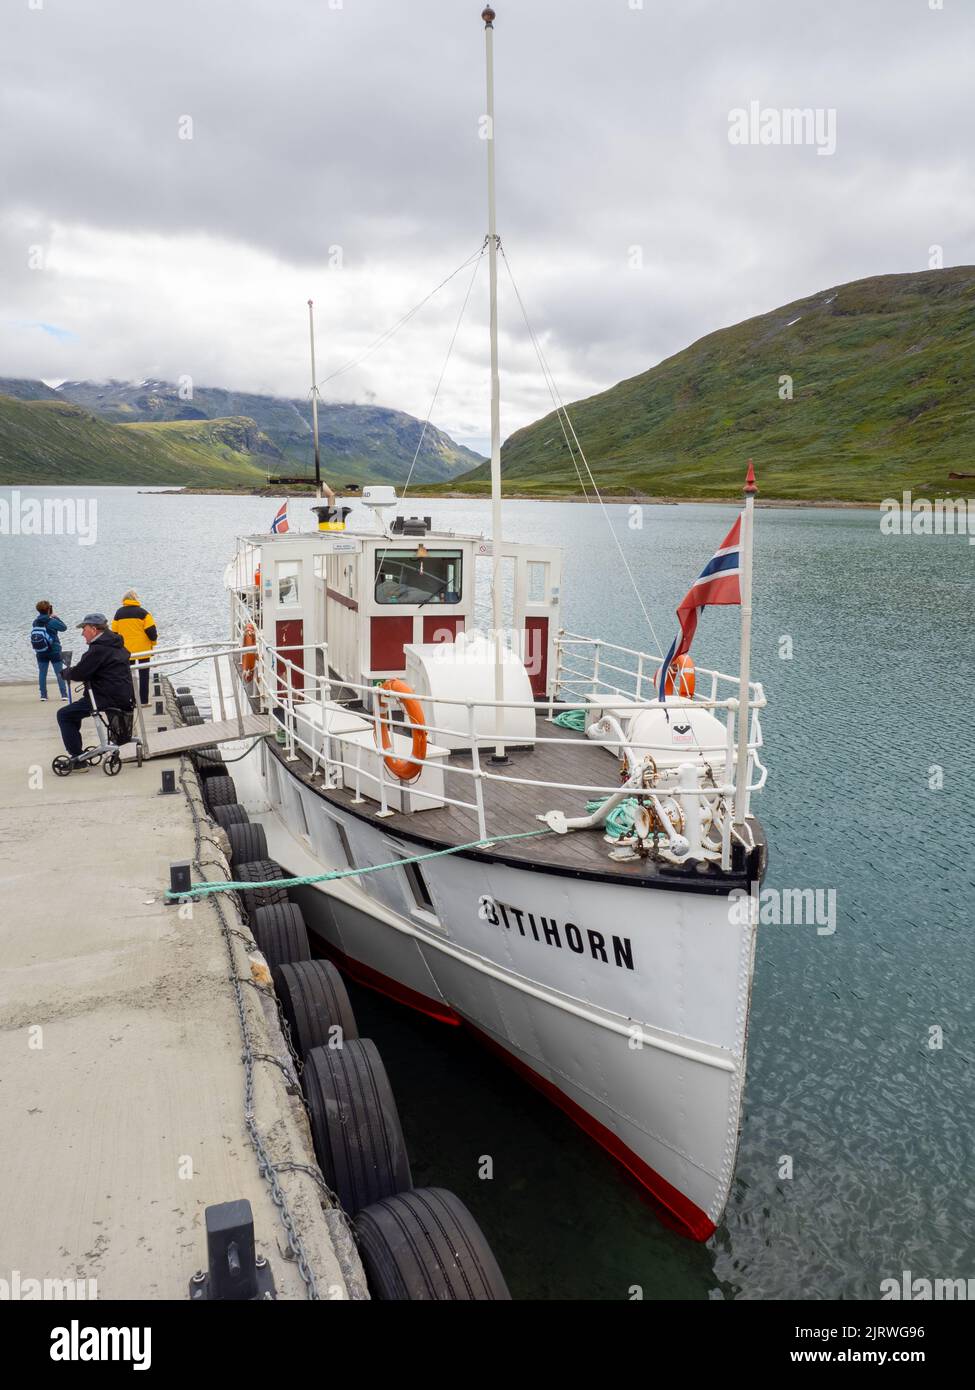 Le ferry de Bitihorn sur le point de naviguer d'Eidsbugarden à Bygdin sur le lac de Bygdin dans le parc national de Jotunheimen Norvège Banque D'Images